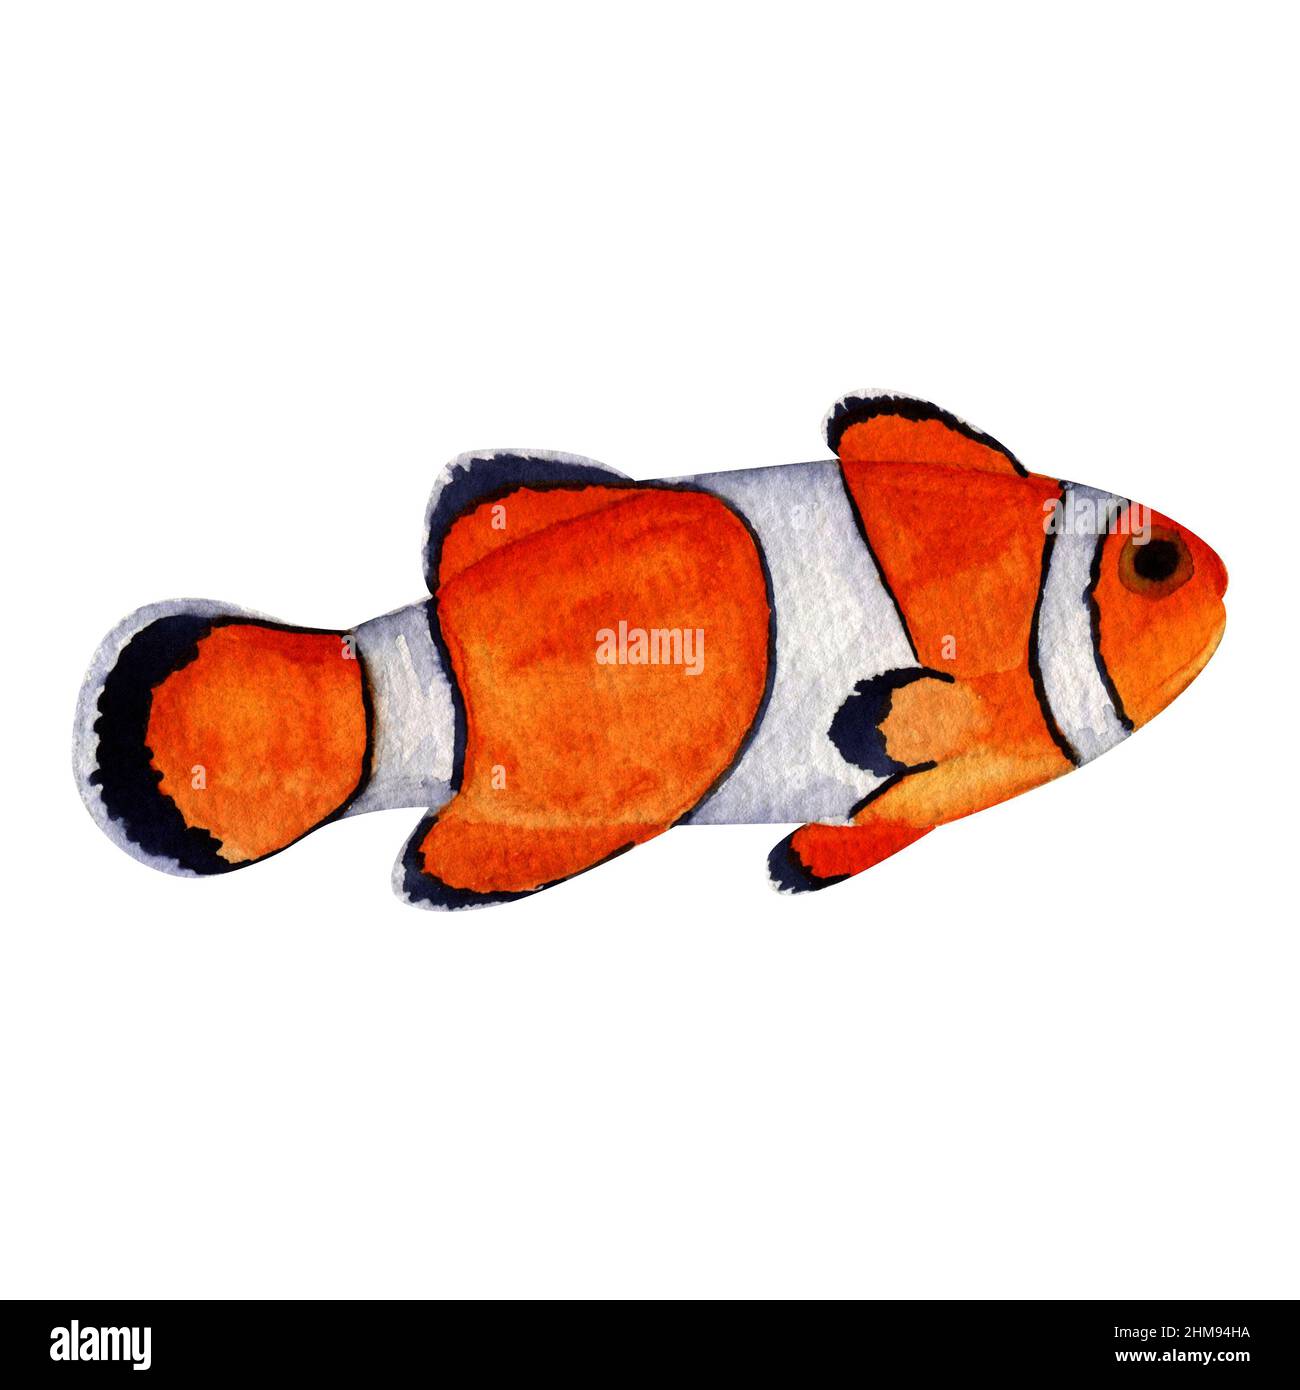 Aquarell Clown Fisch auf weißem Hintergrund, Sea Life Illustration, Ocean fish Malerei, Orange Fisch Bild, Hand bemalt Clown Fisch, Auarium Fisch Bild Stockfoto